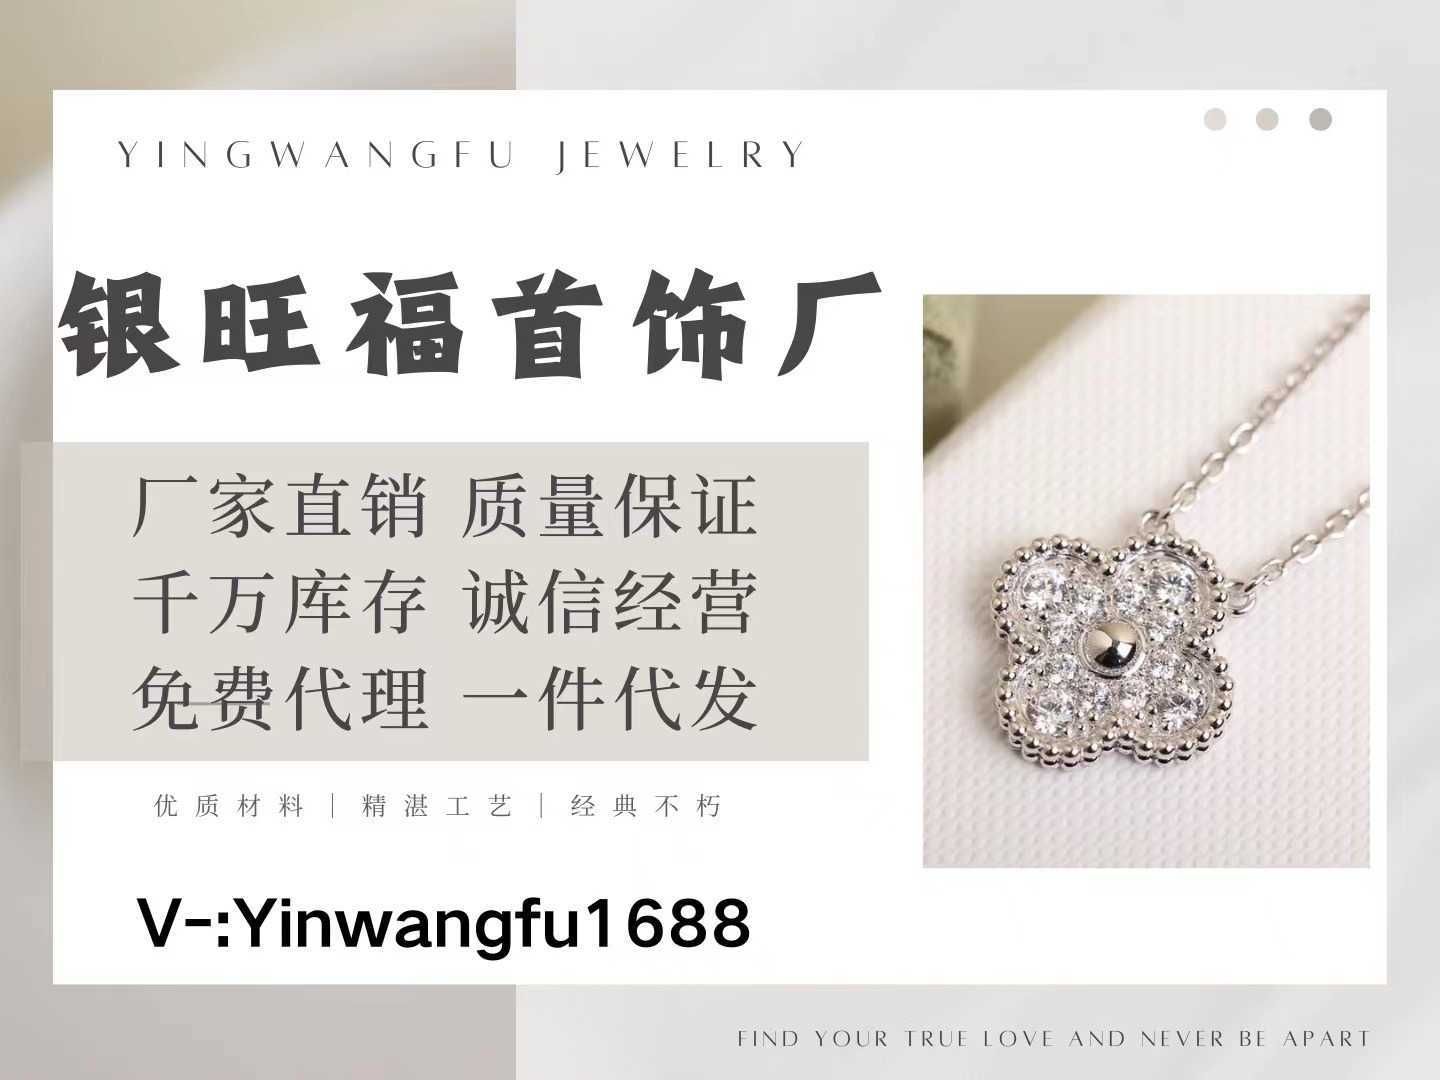 Più Yinwangfu1688